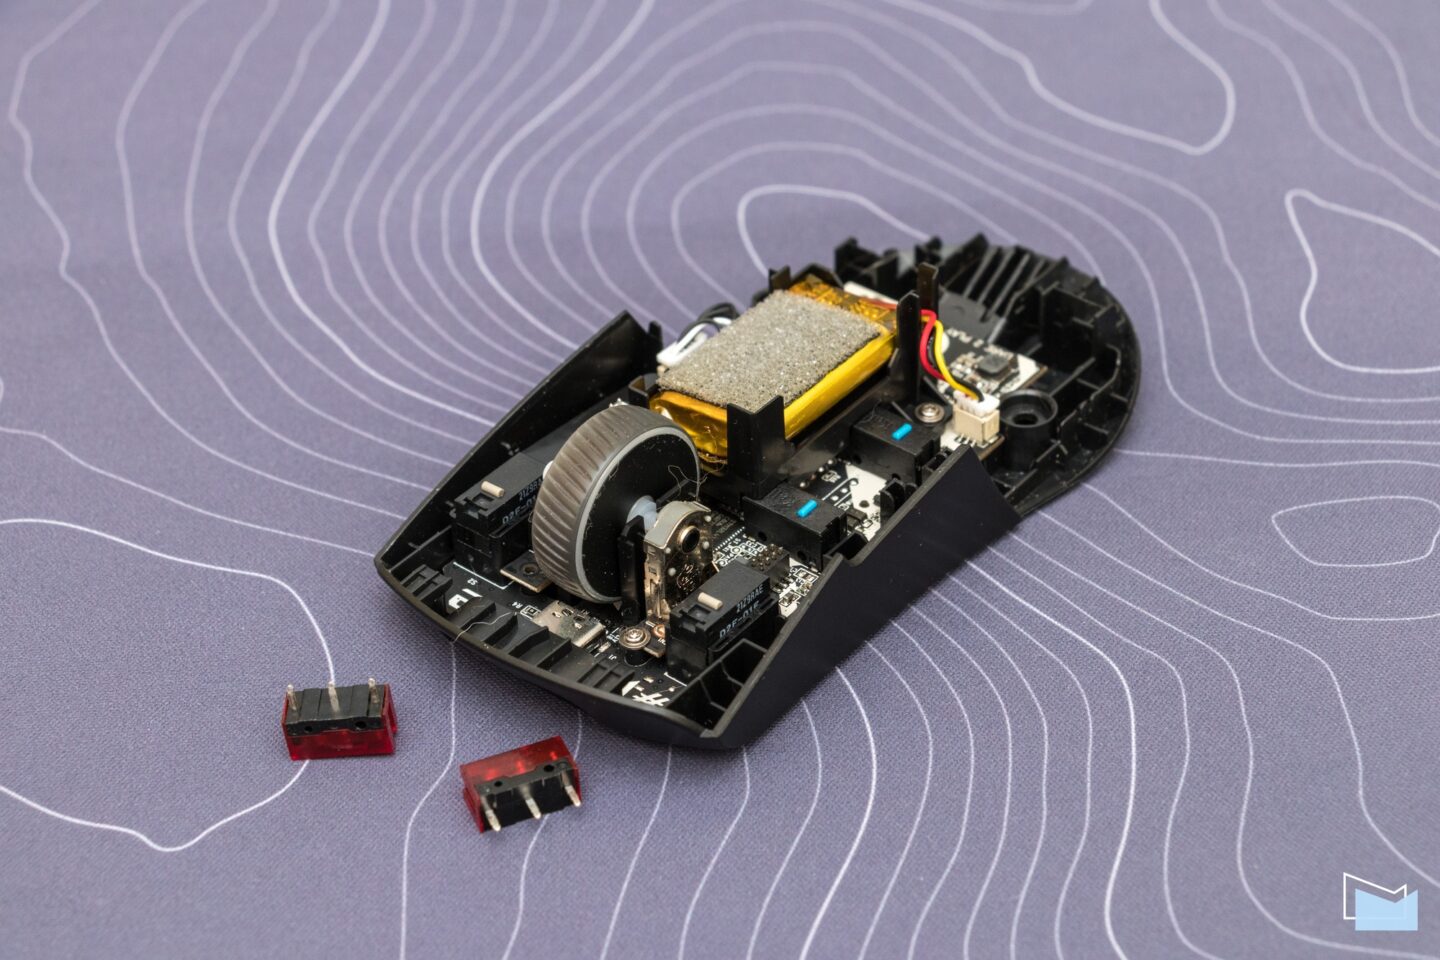 Огляд ASUS ROG Keris Wireless: ігрова миша з трьома варіантами підключення